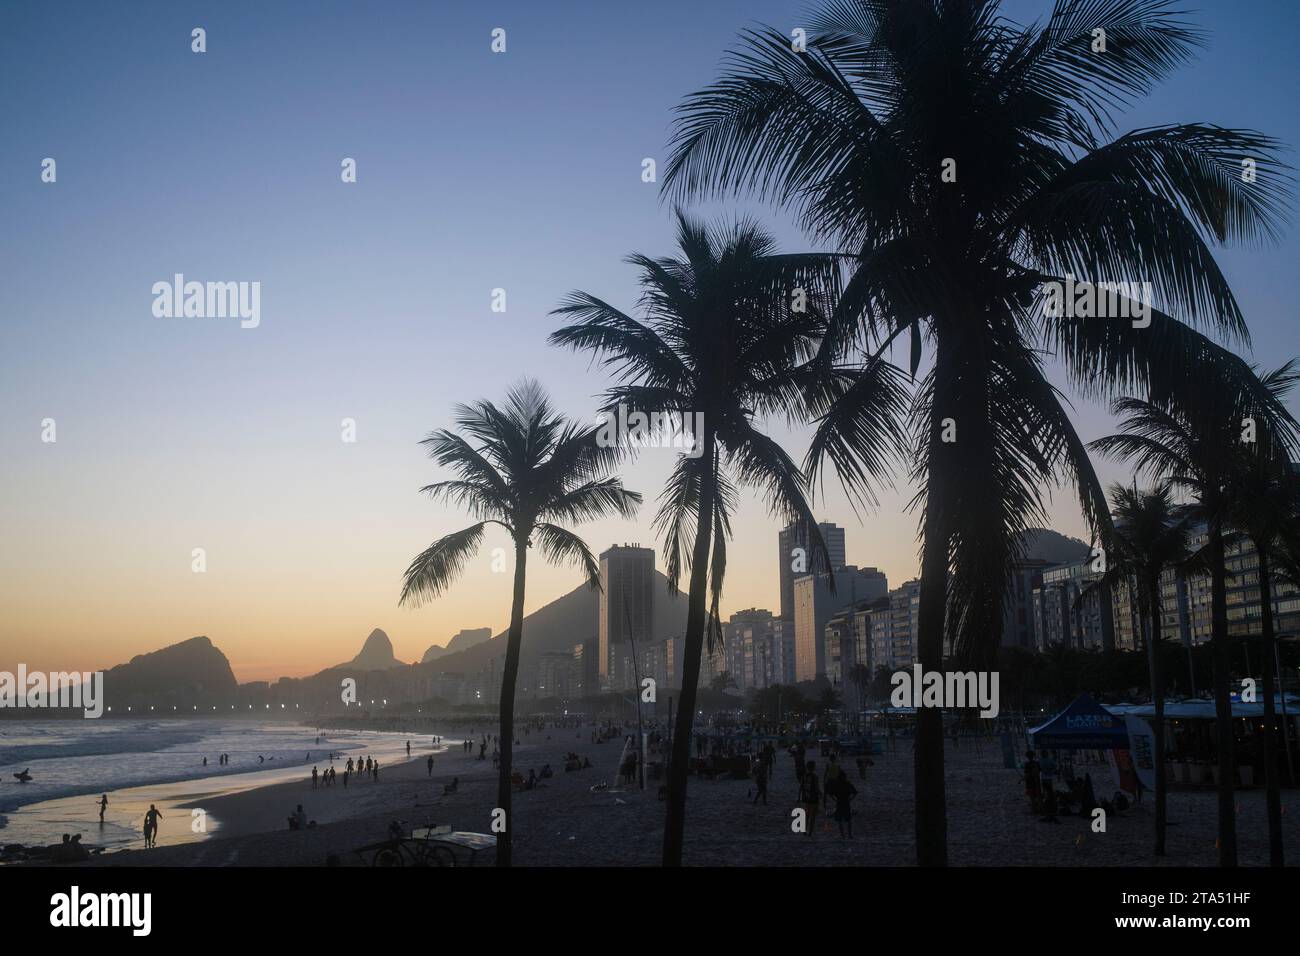 Leme et la plage de Copacabana au coucher du soleil, vue à travers les cocotiers, Rio de Janeiro, Brésil. Banque D'Images